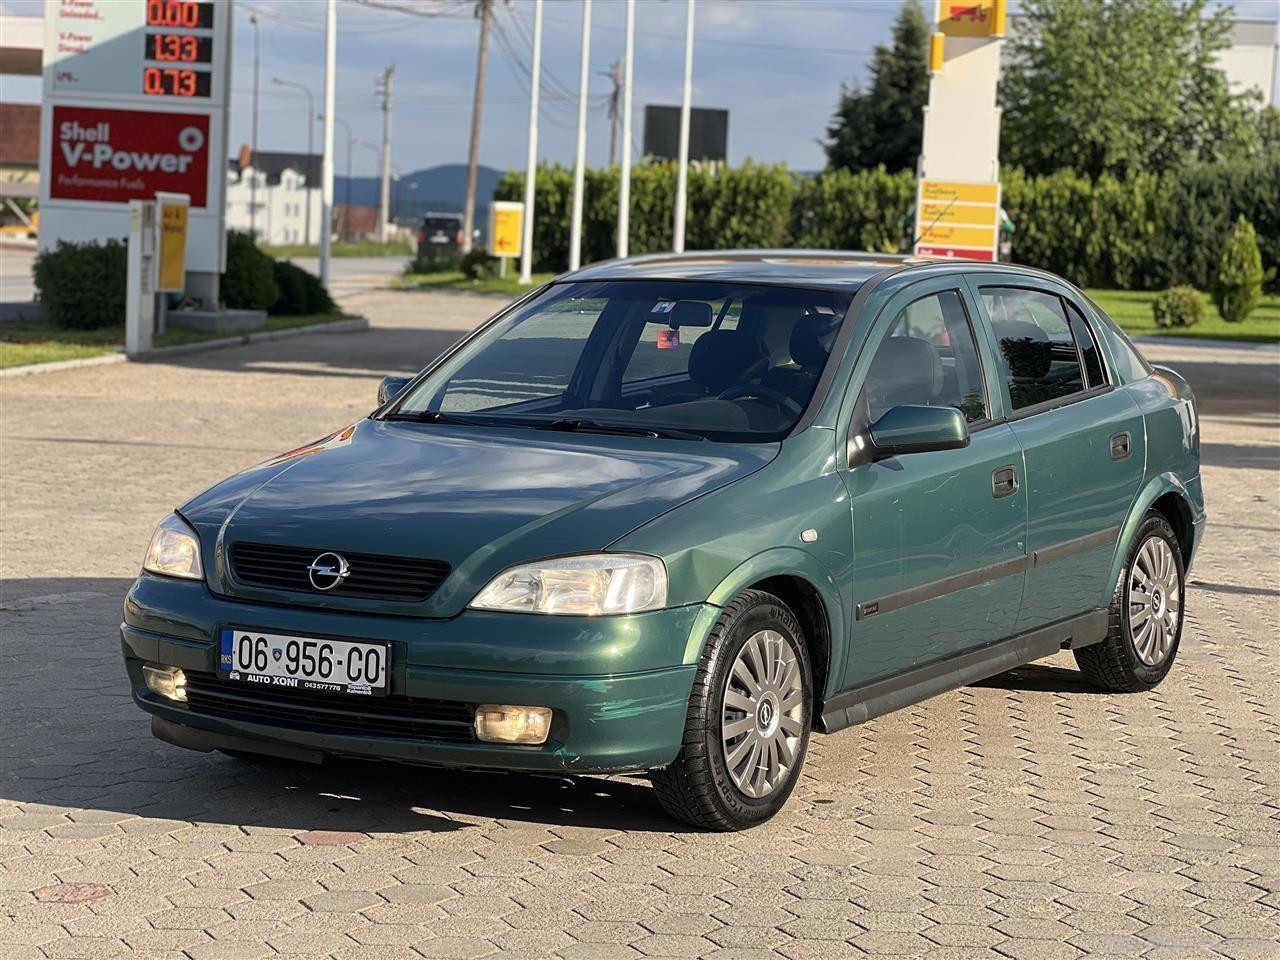 Opel Astra G 1.8 Benzin V.p12/2000 Rks 